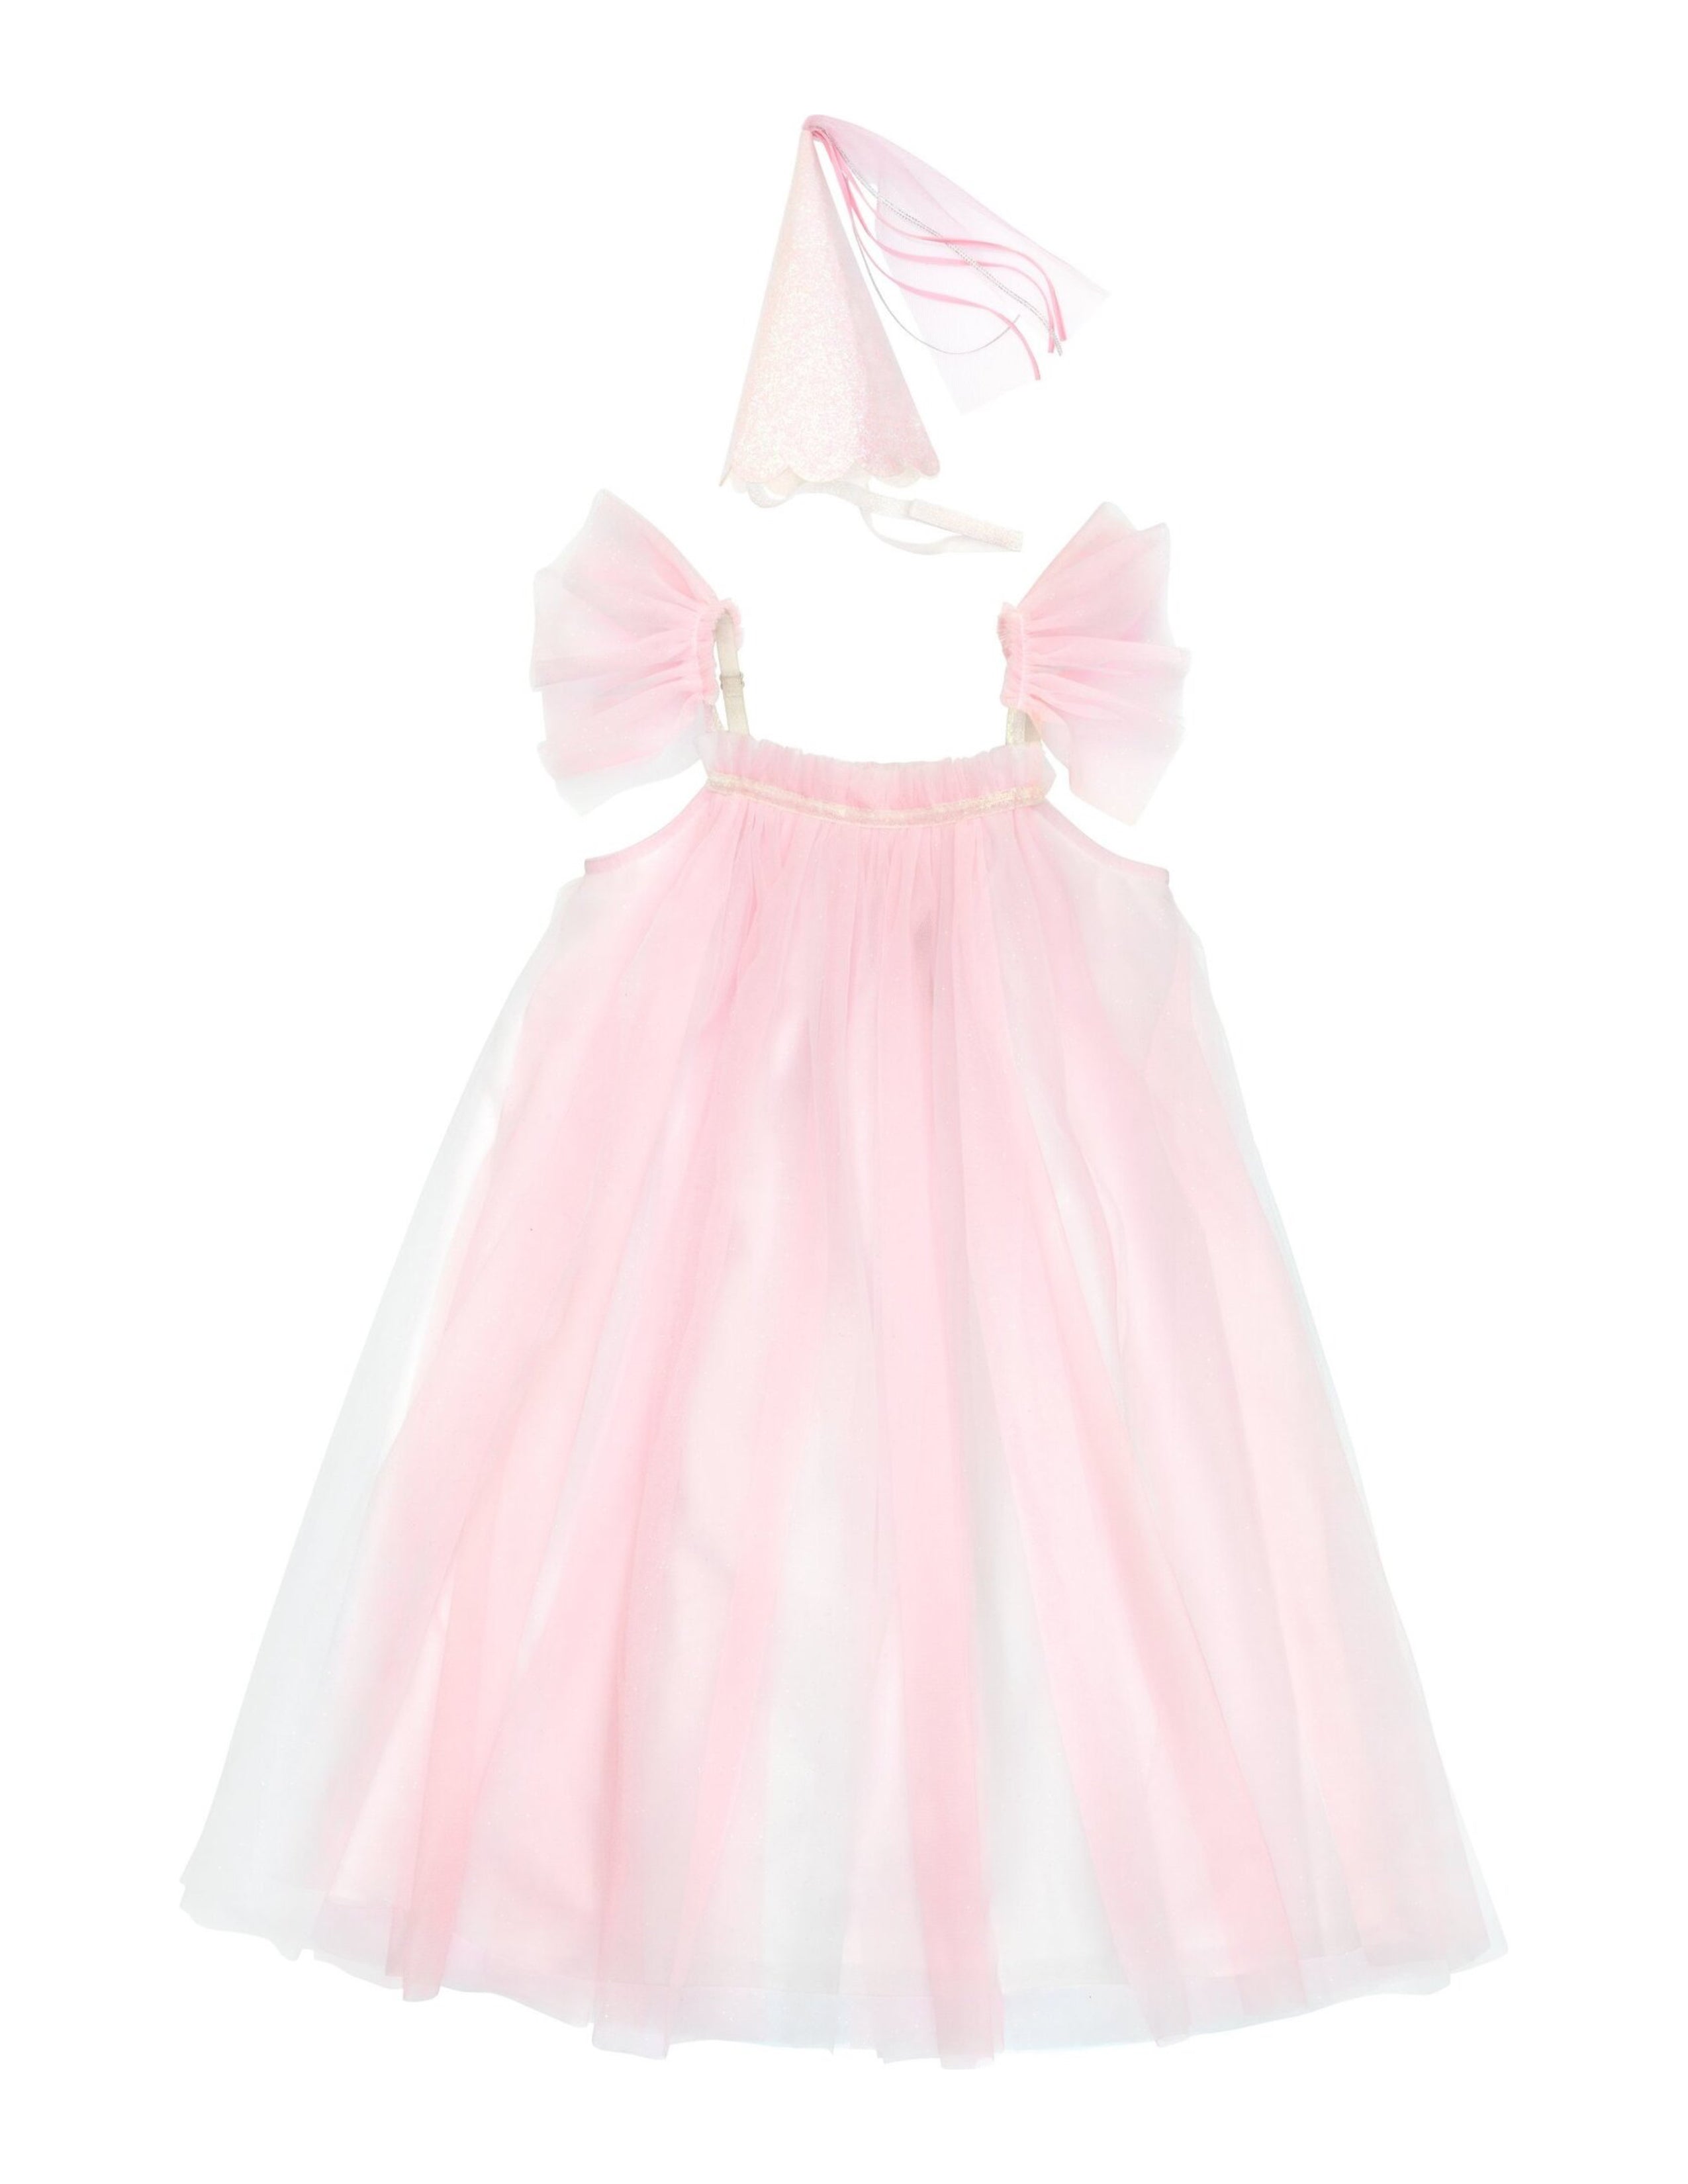 Magical Princess Dress Up Costume